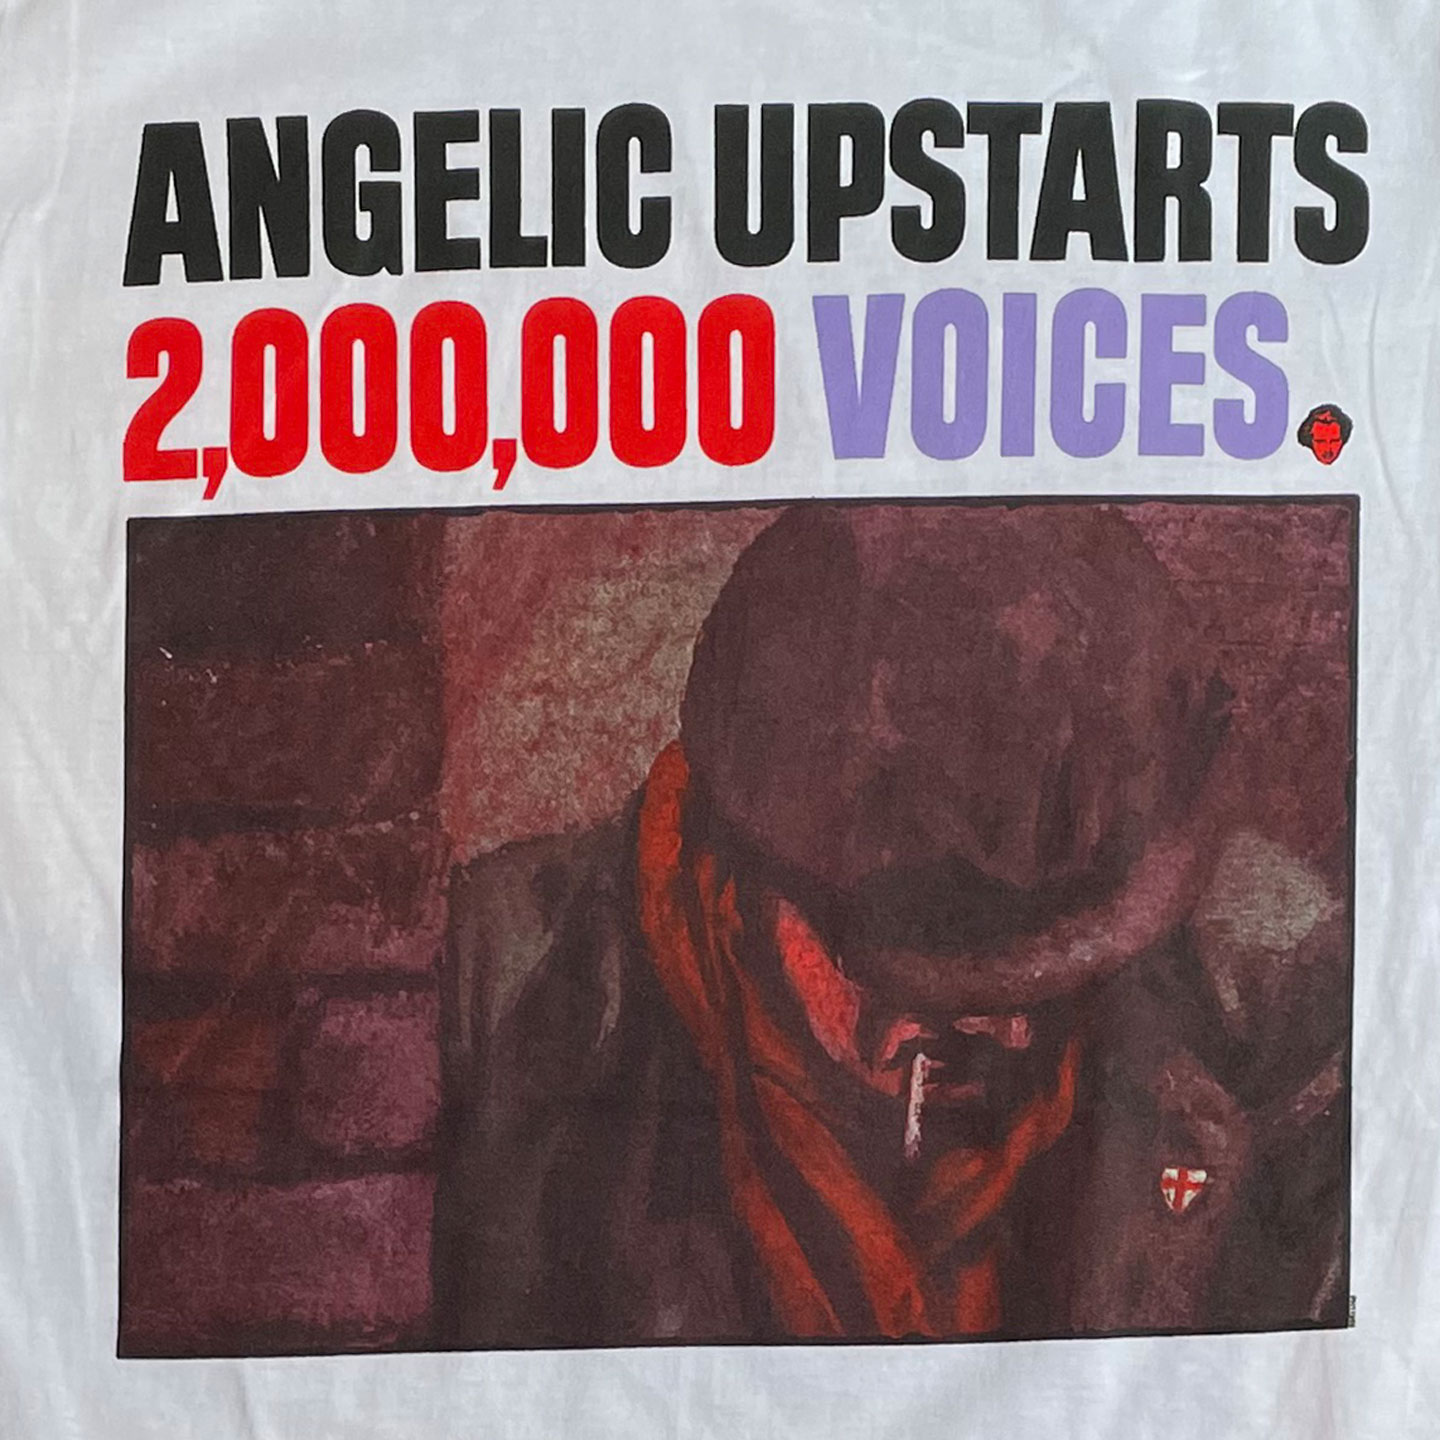 ANGELIC UPSTARTS Tシャツ 2,000,000 Voices